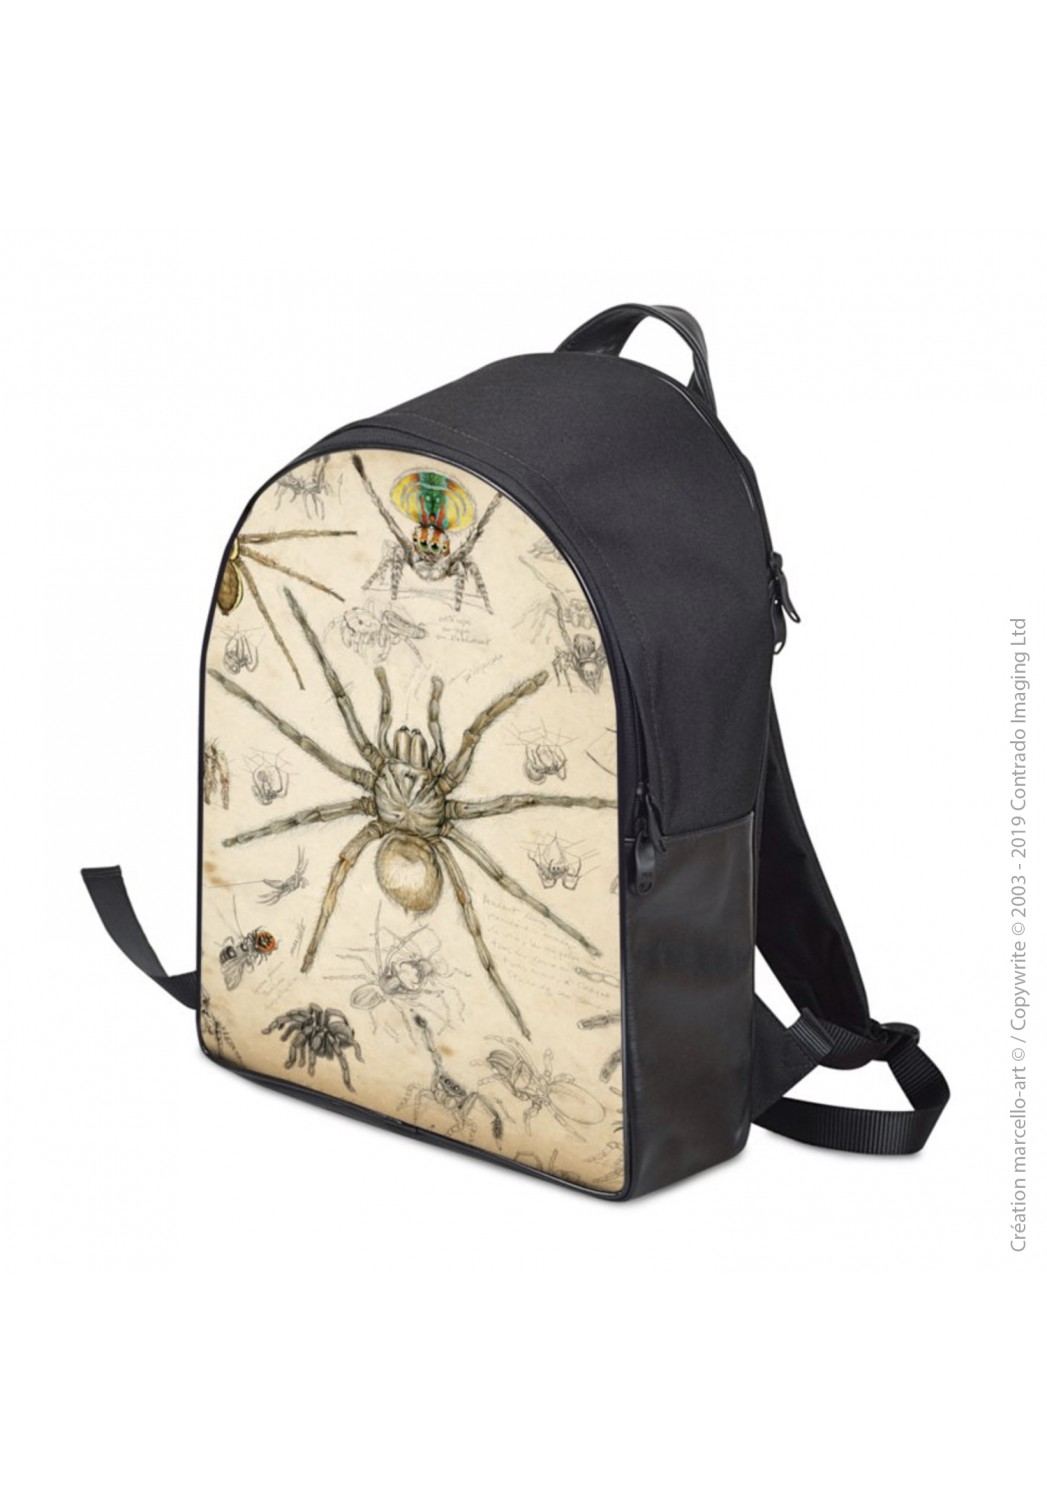 Marcello-art: Fashion accessory Backpack 82 Arachna